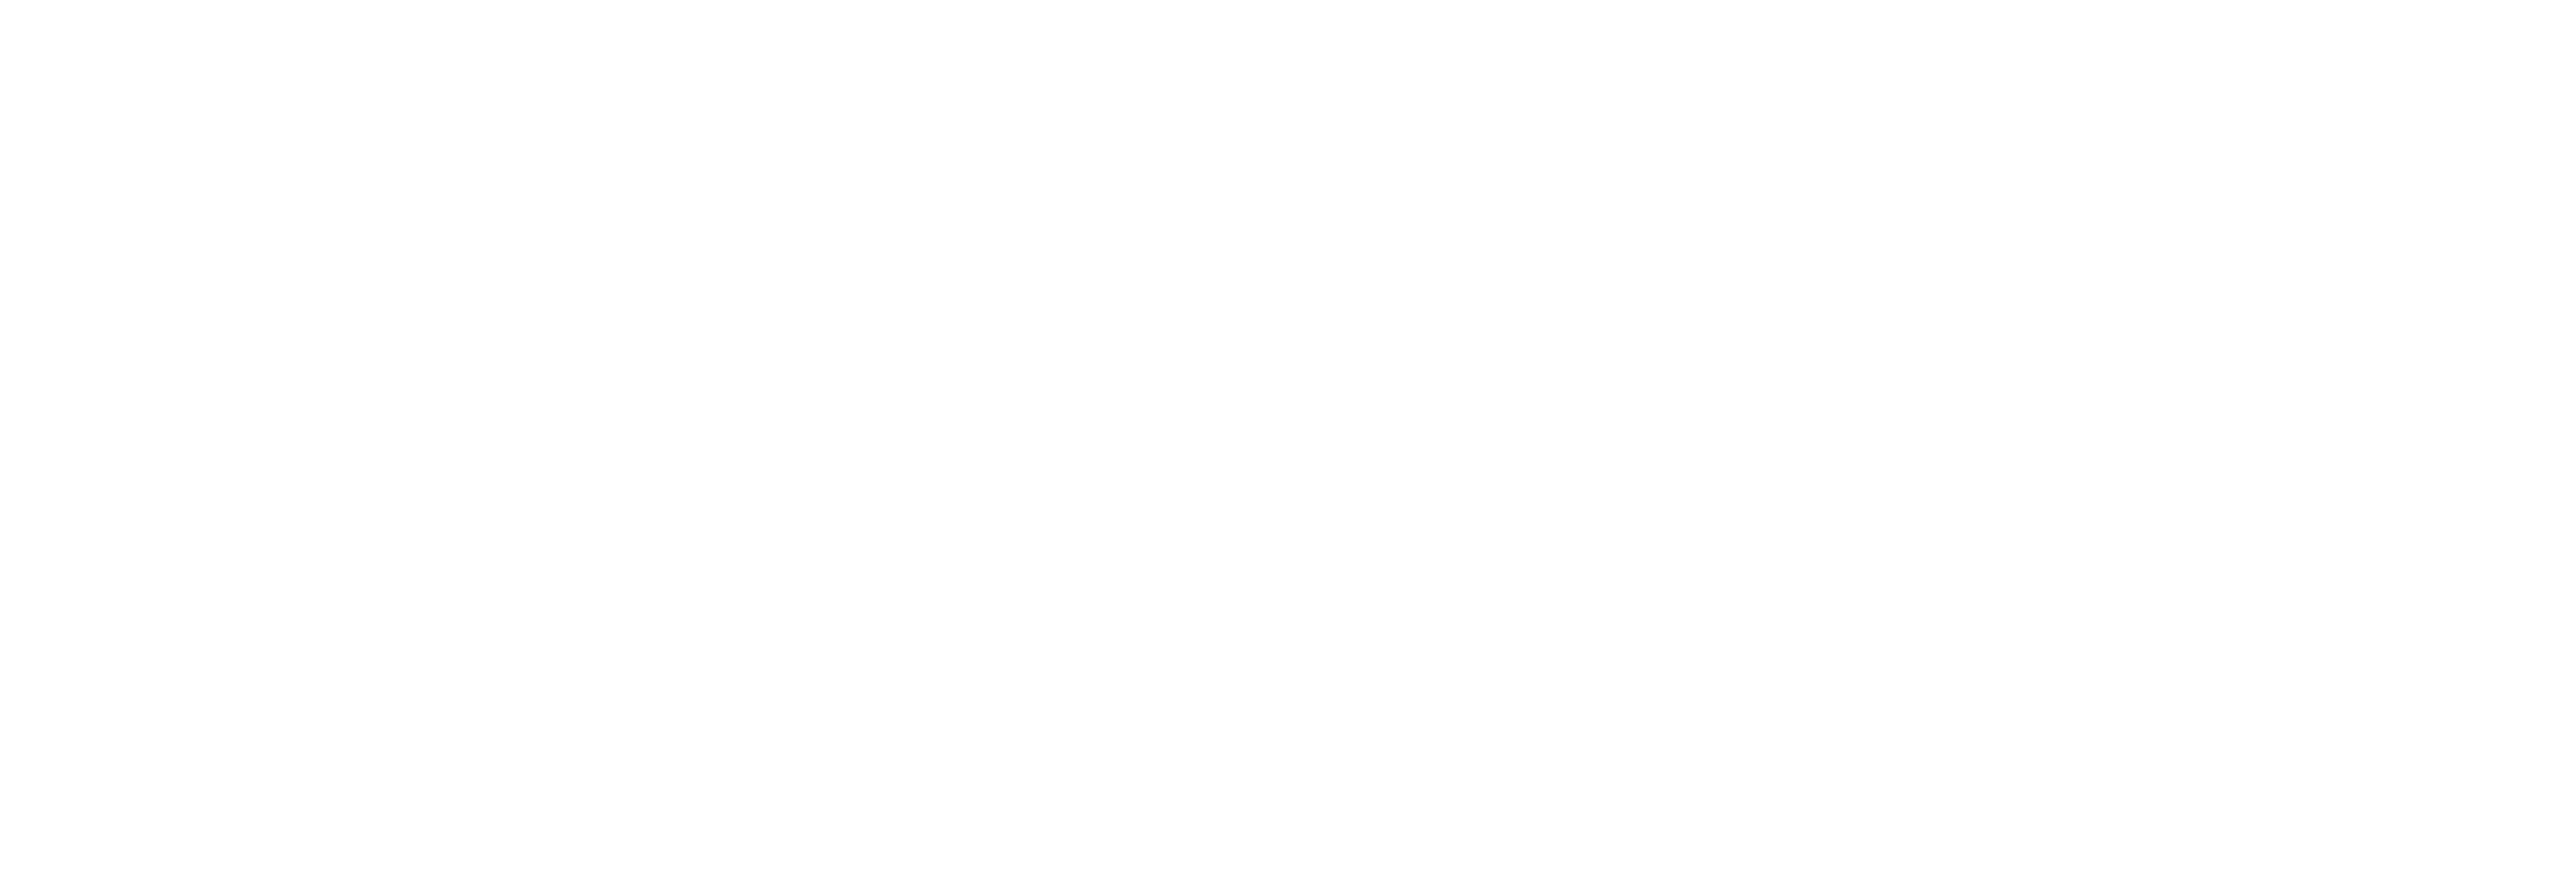 AniCura Essen logo